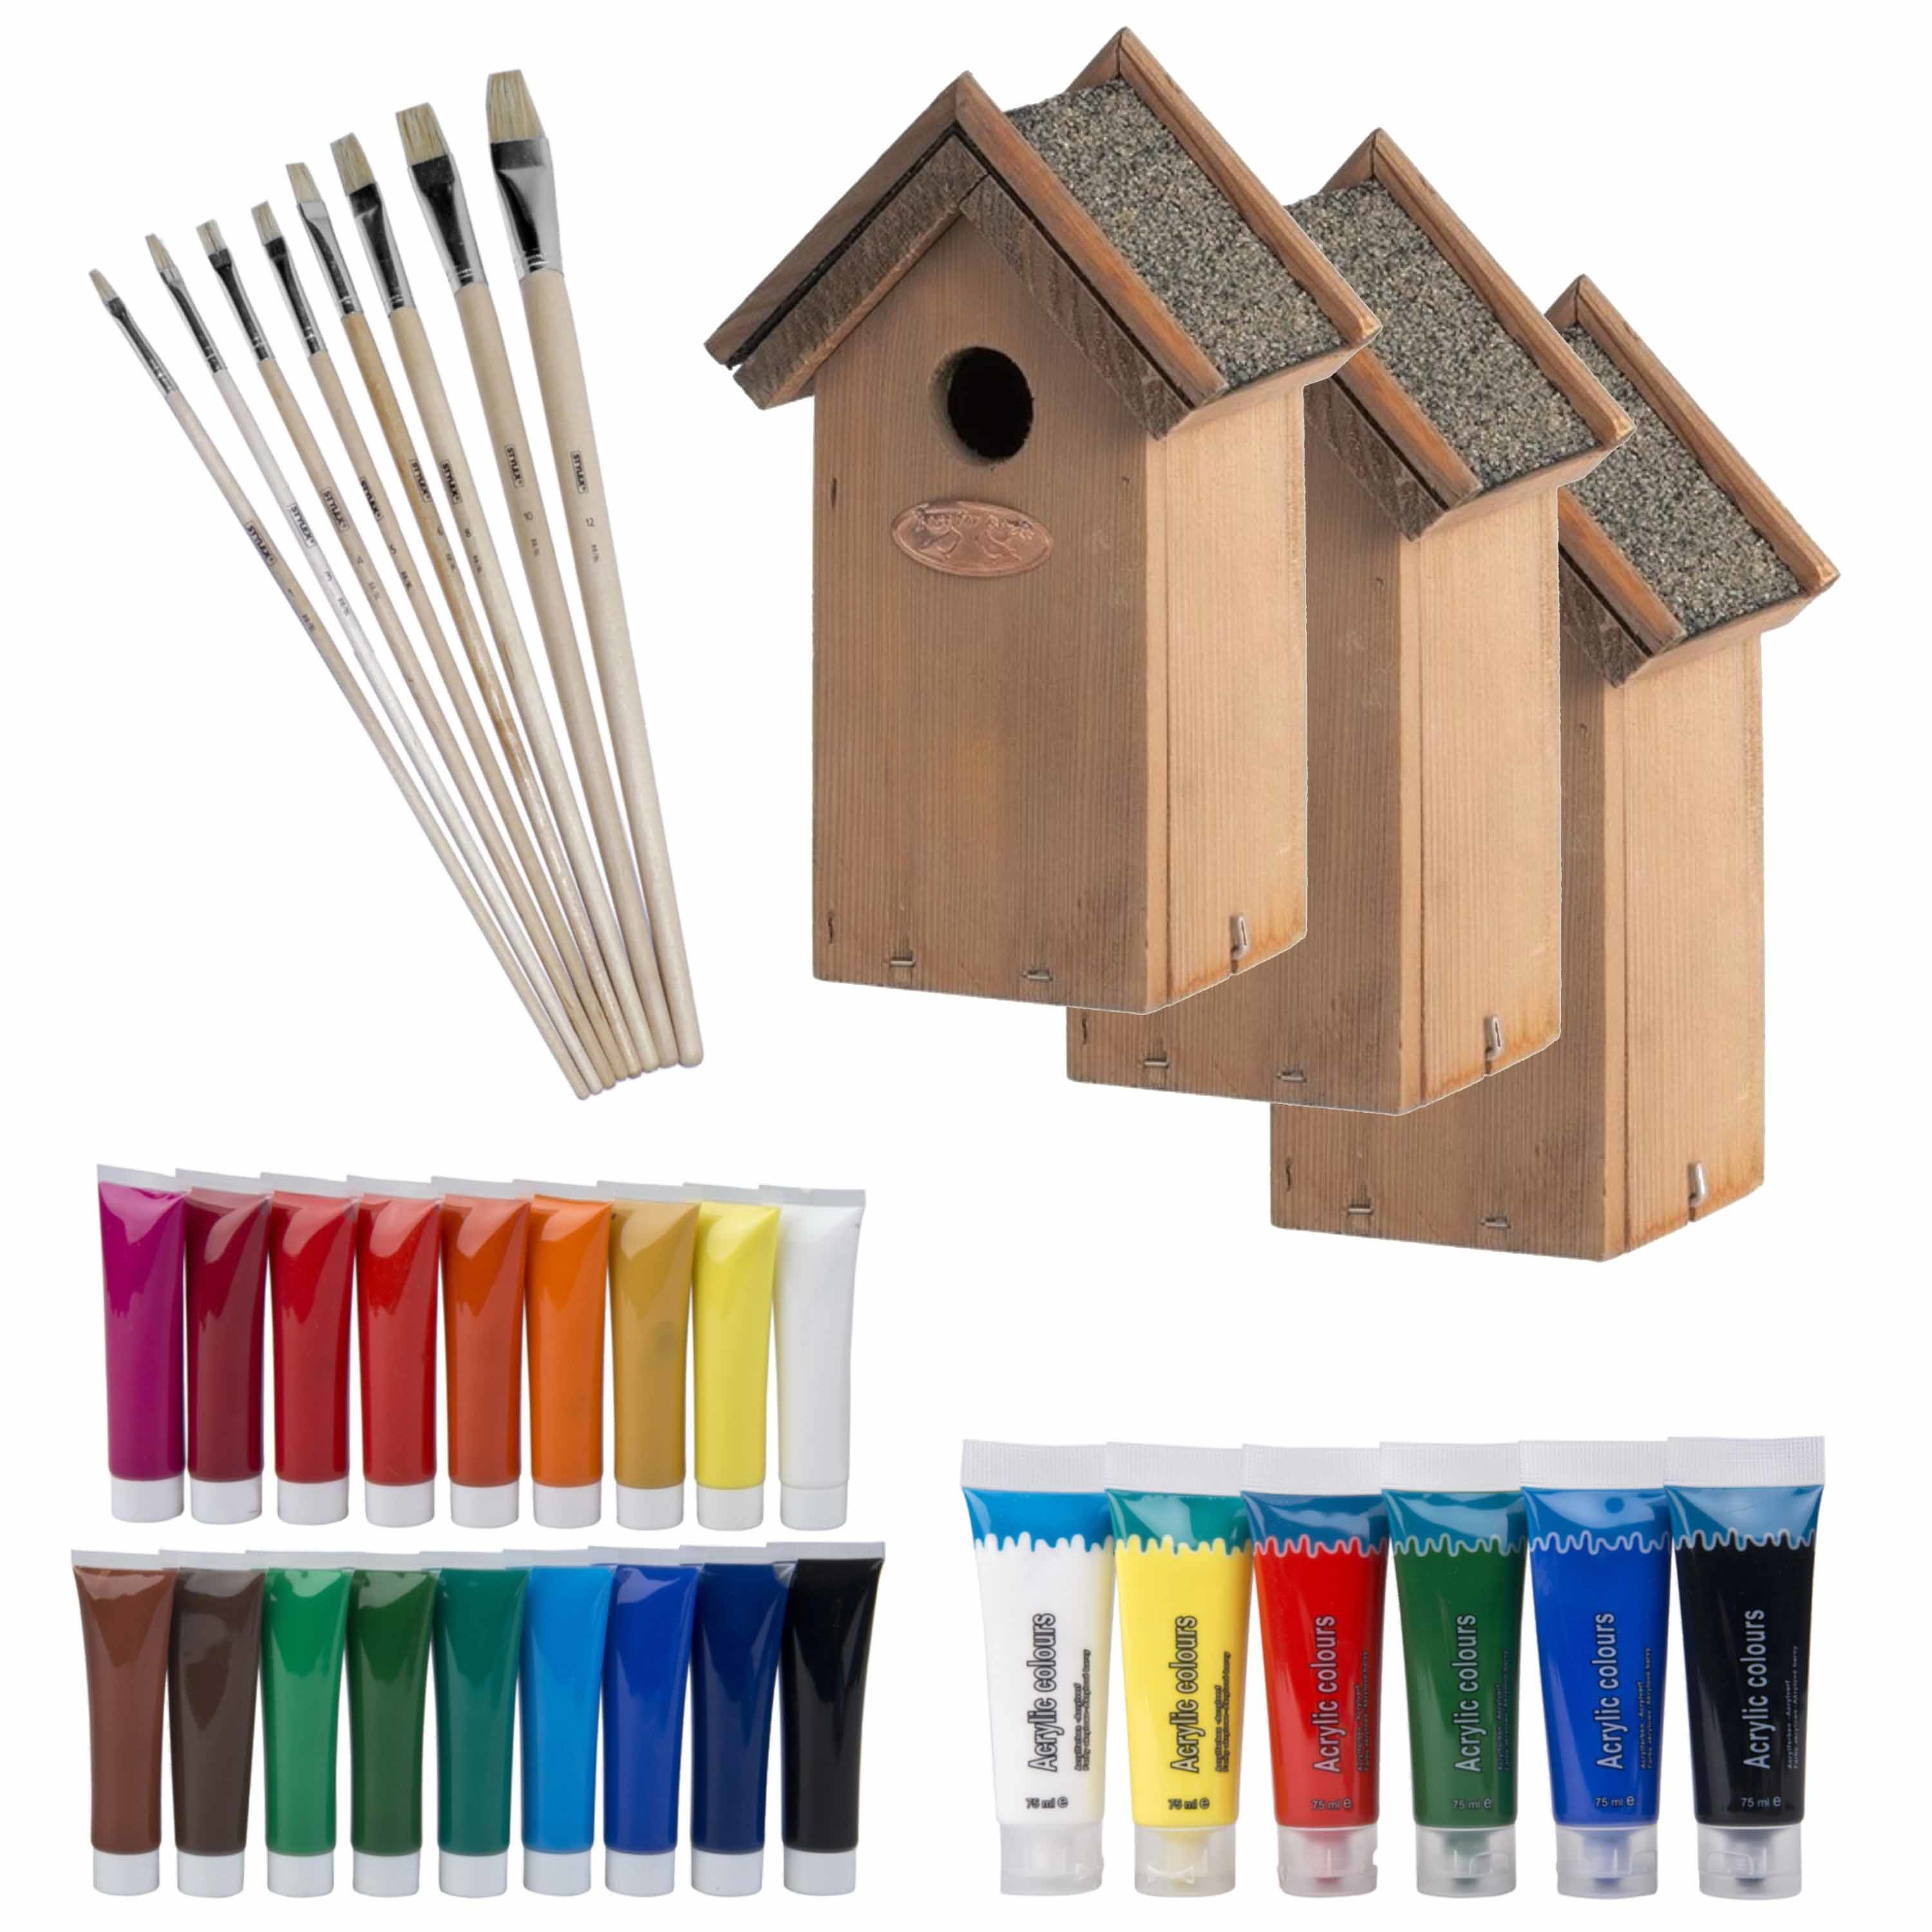 6x stuks houten vogelhuisje-nestkastje 22 cm Zelf schilderen pakket verf-kwasten